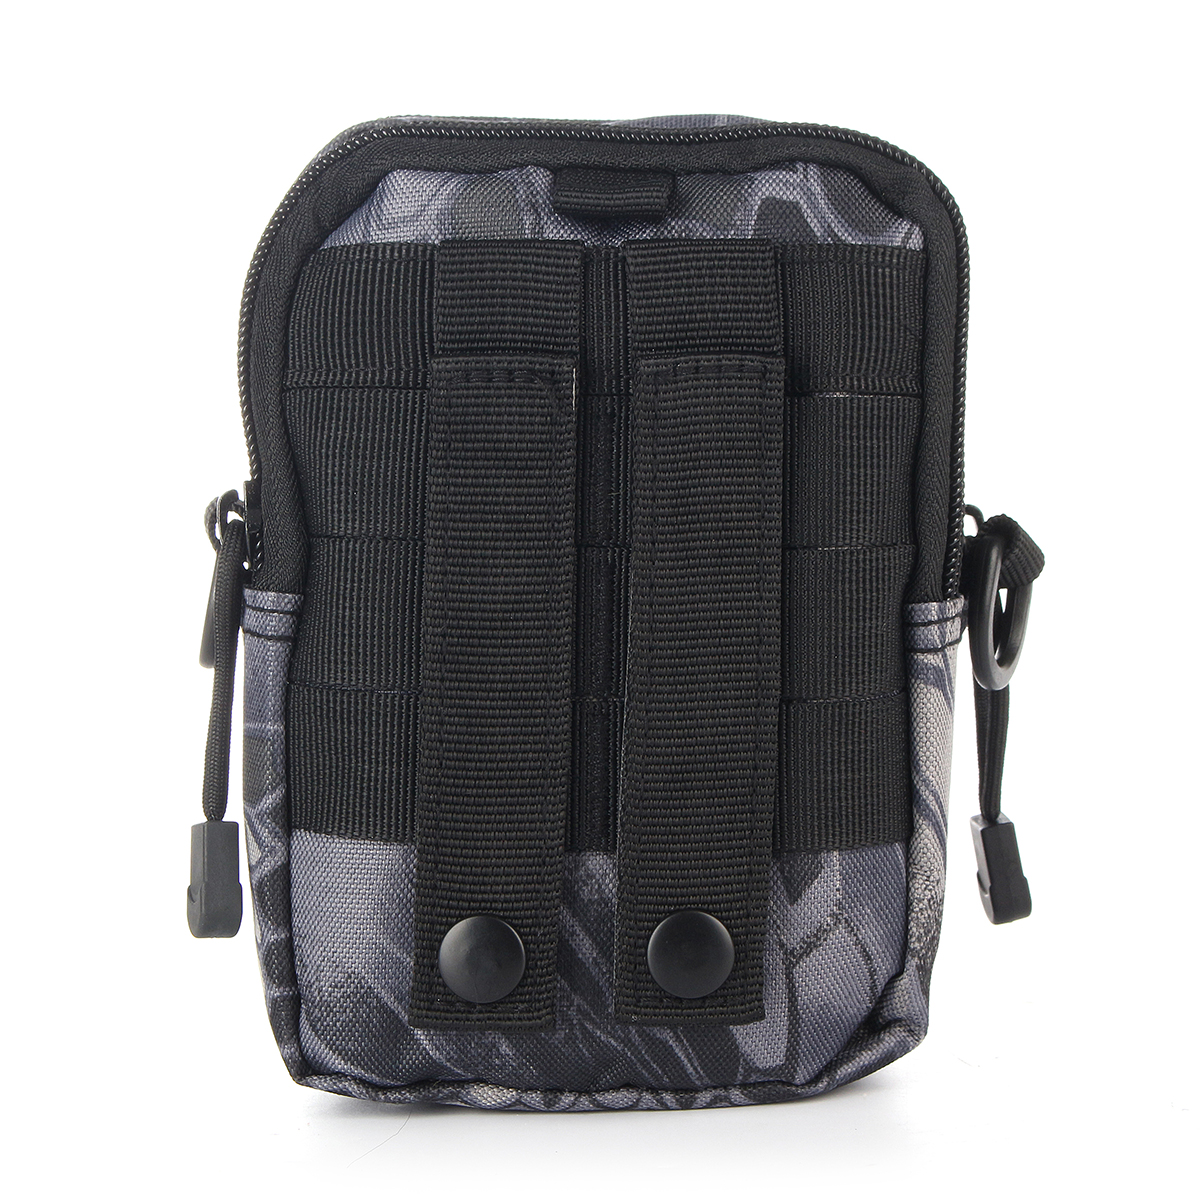 Waterproof-Tactical-Waist-Bag-Belt-Pouch-Hiking-Camp-Phone-Pocket-Waist-Shoulder-Bags-1817226-8